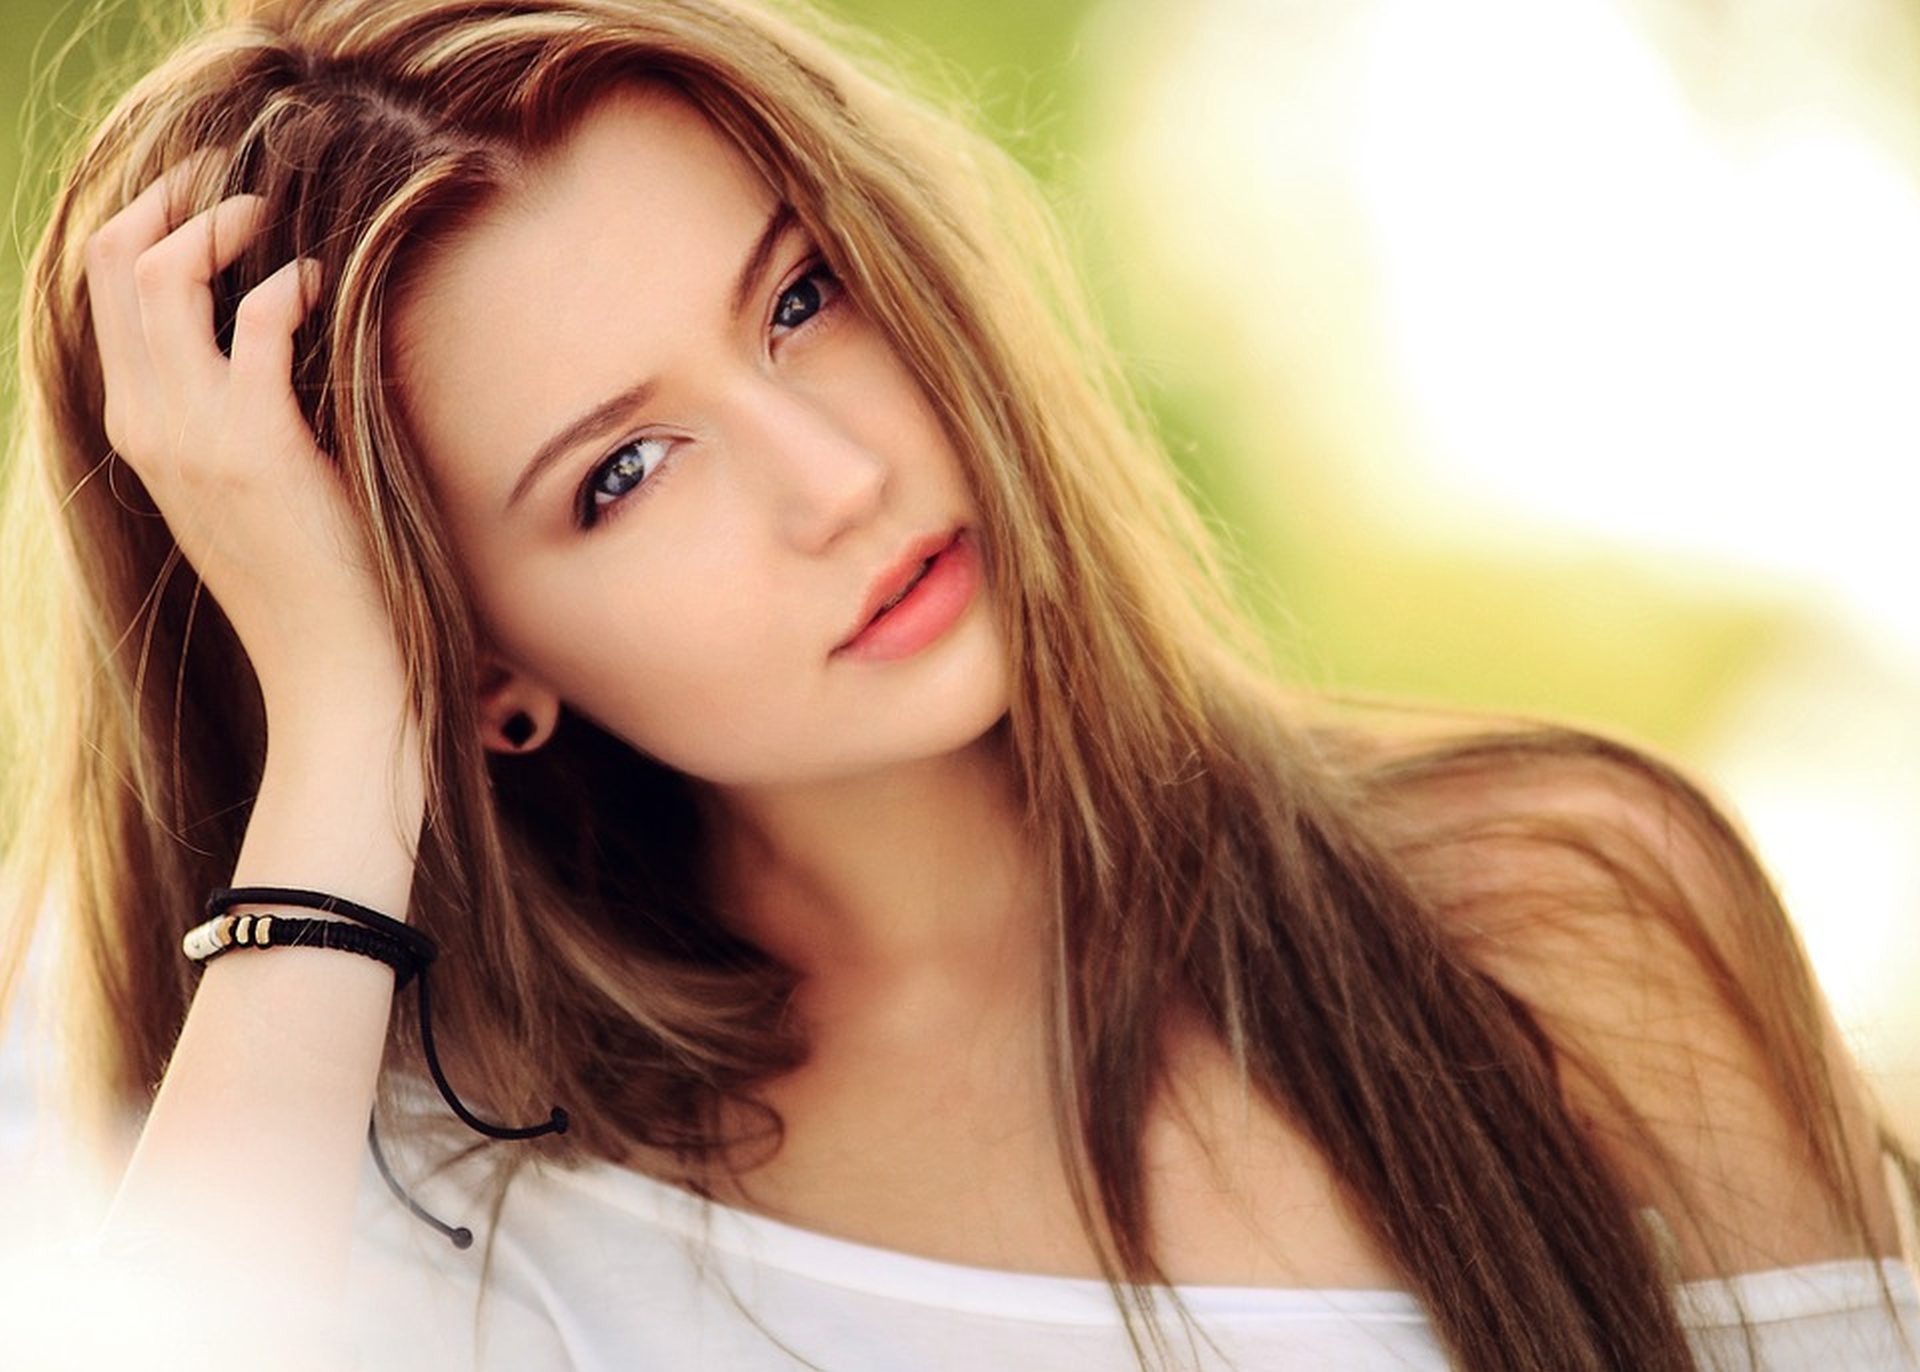 Gorgeous Blonde Girl Innocent Wallpaper - Face - HD Wallpaper 